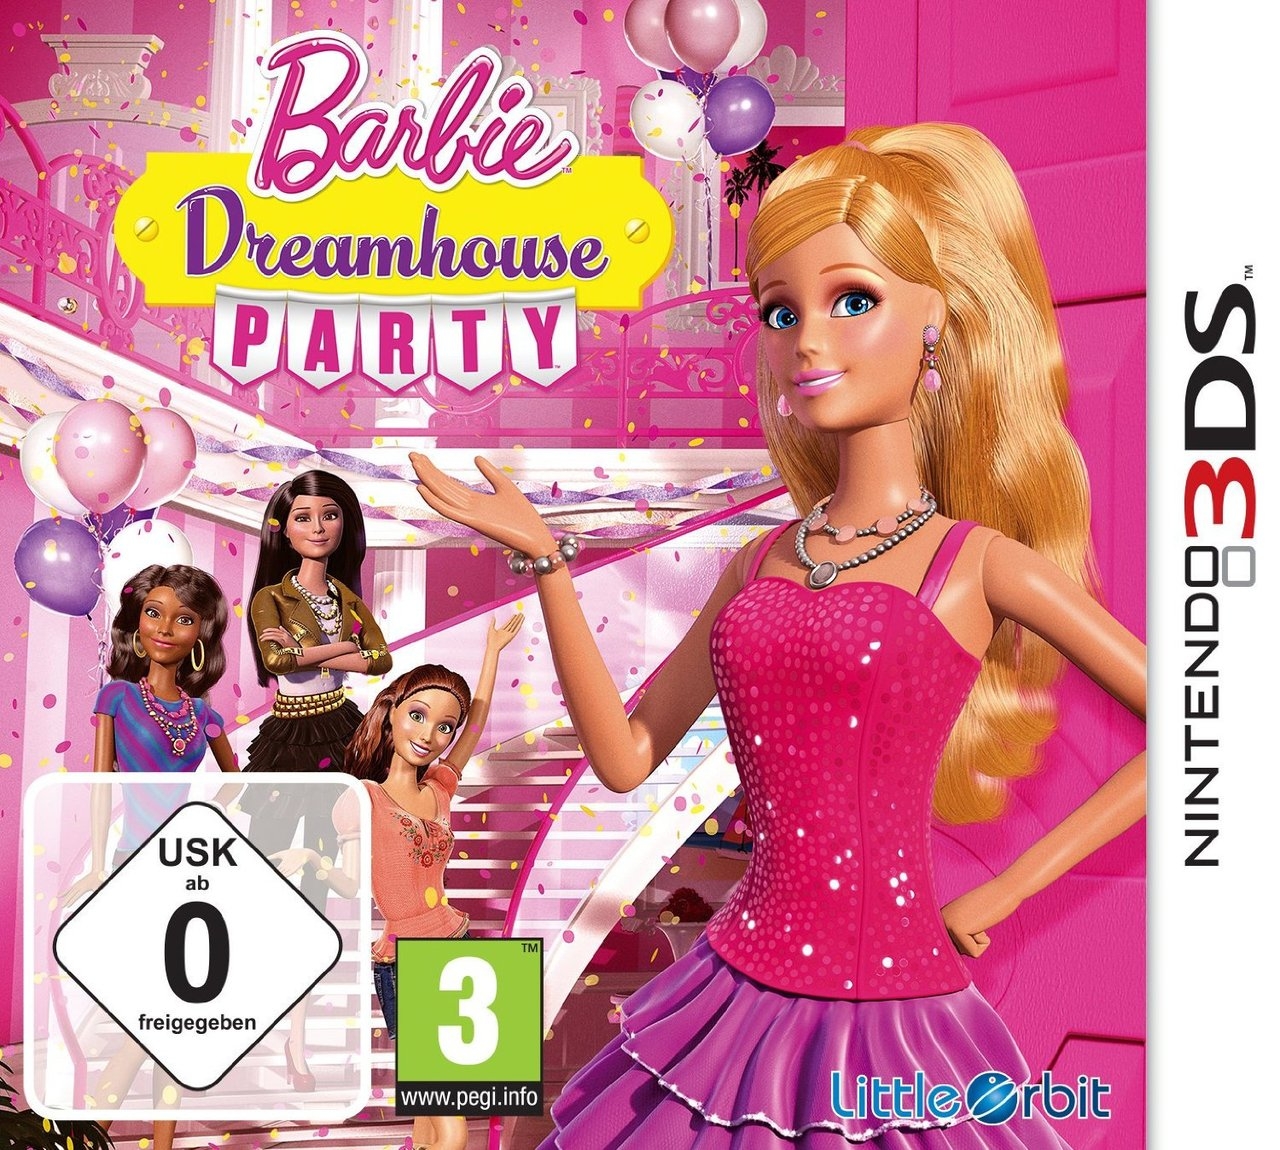 Boxshot Barbie Dreamhouse Party